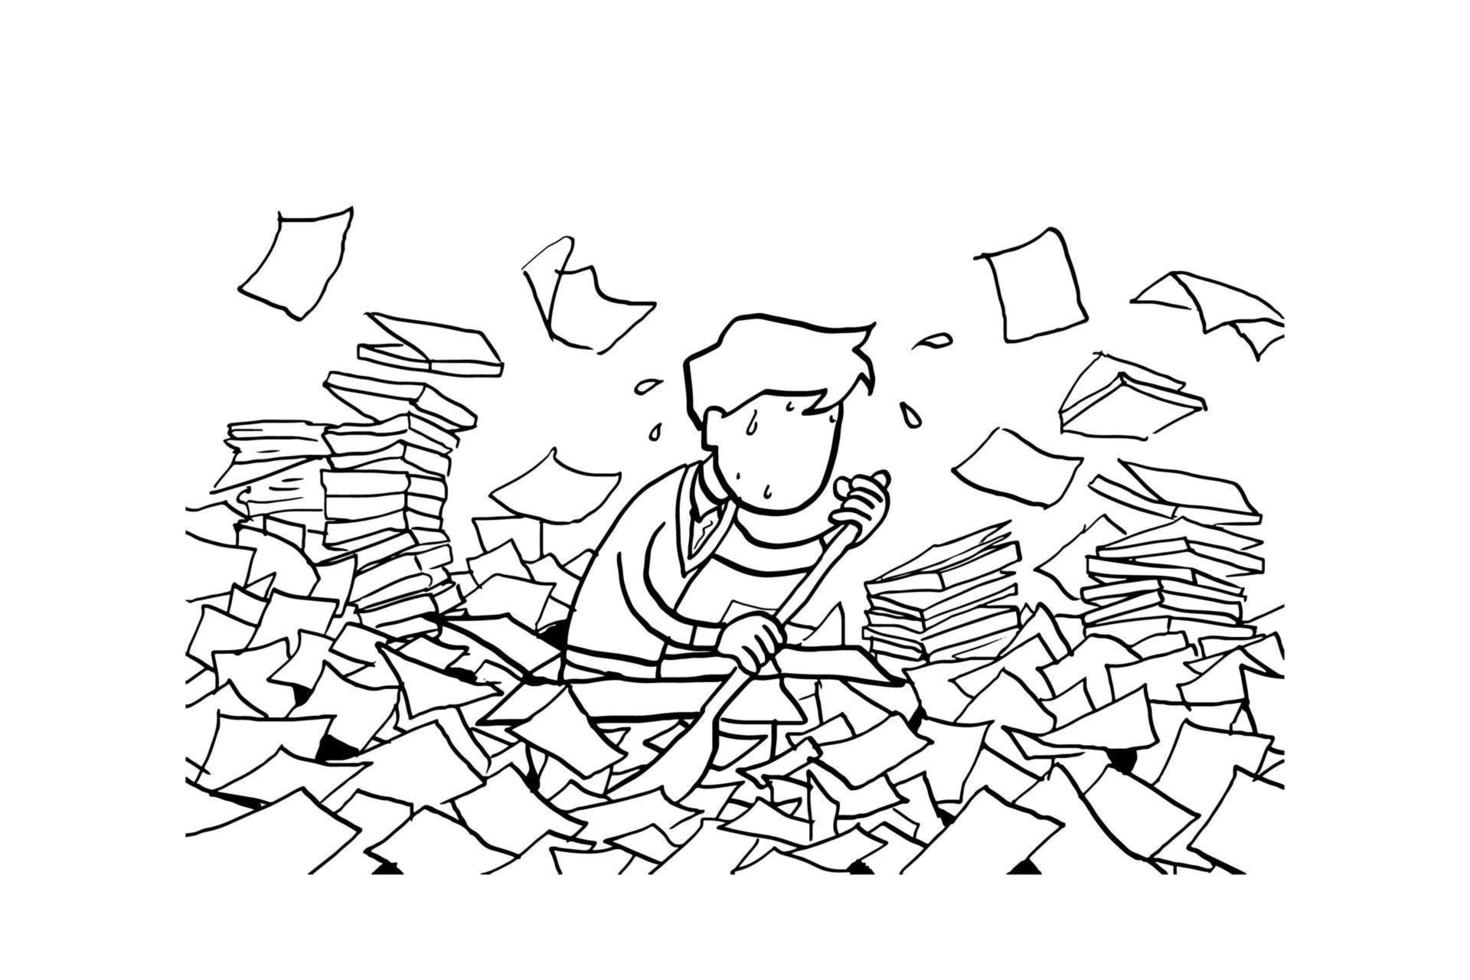 manlig arbetare ror pappersbåten på havet av dokument. koncept för byråkrati. tecknad vektor illustration design